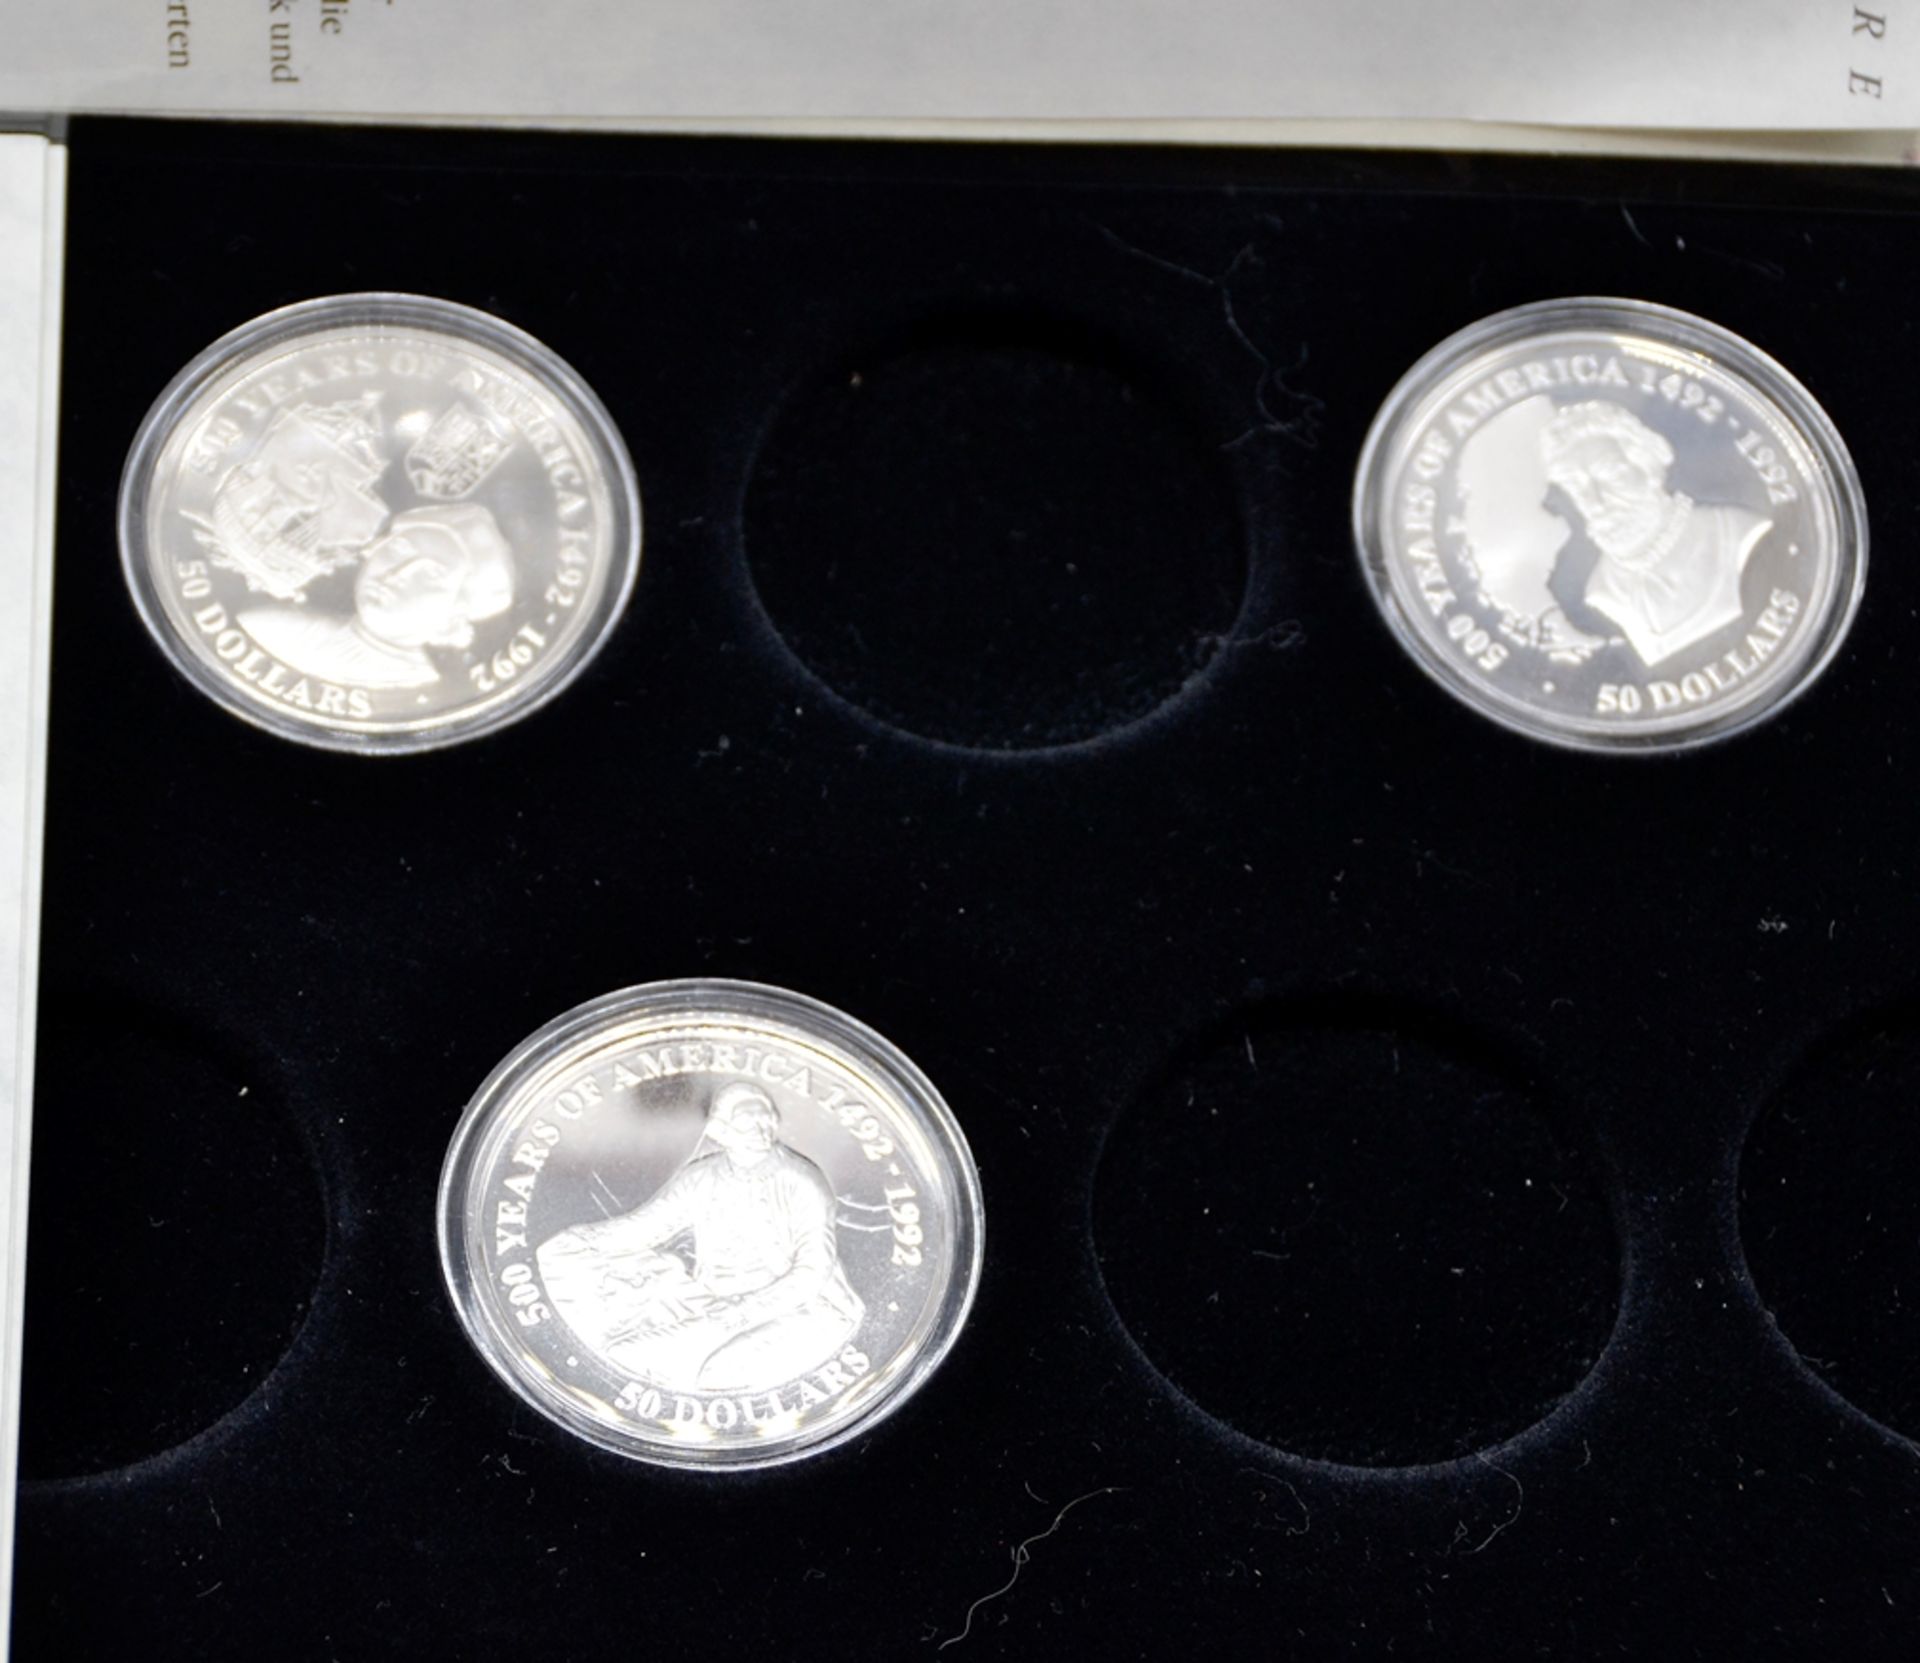 Konvolut 3 Silber Münzen 500 Jahre Amerika, darunter 50 Dollars 1989 Ferdinand Magellan Cook Island - Bild 2 aus 2